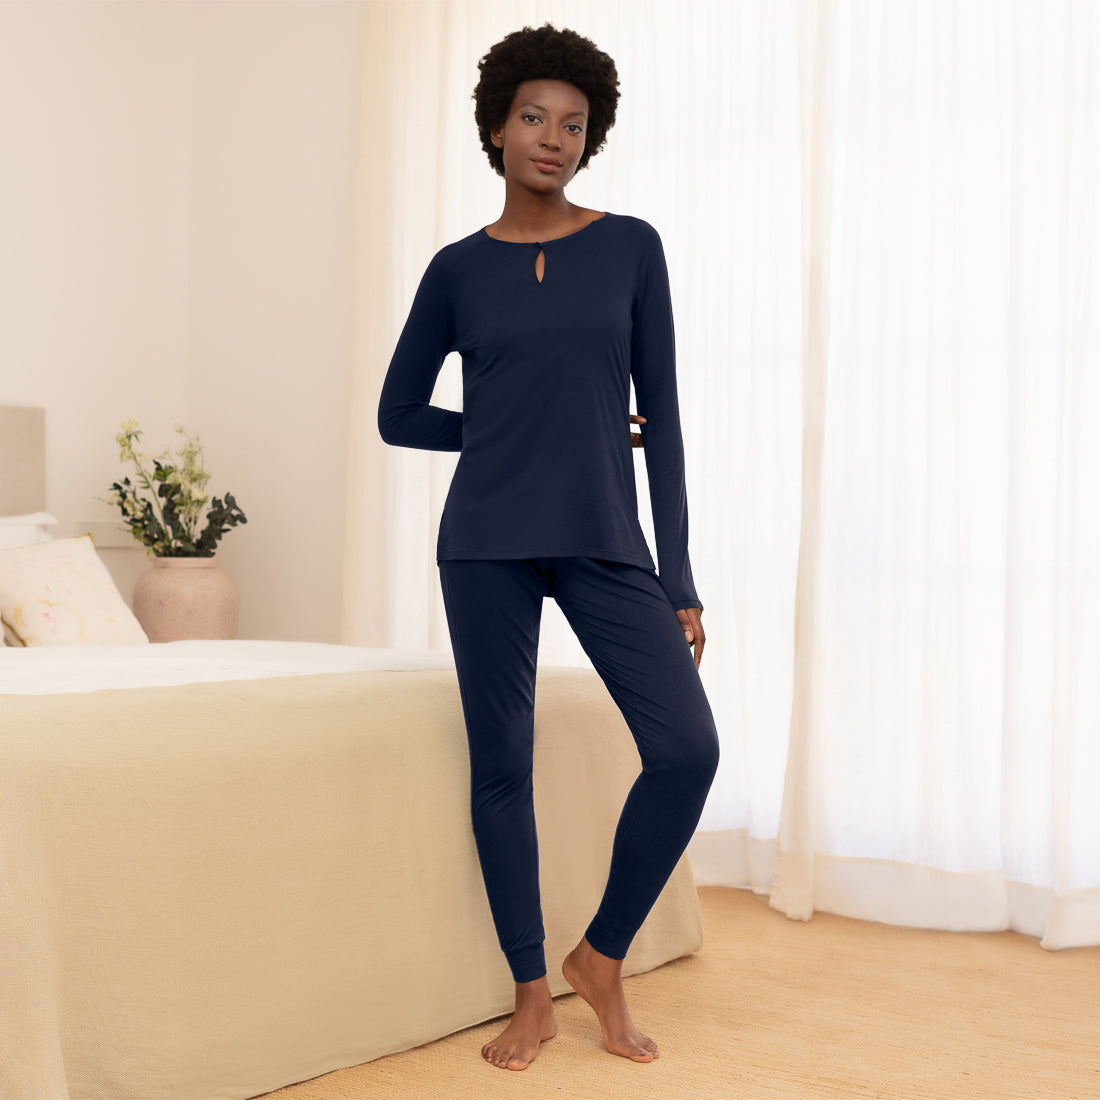 Cooling nightwear for women || Navy blue